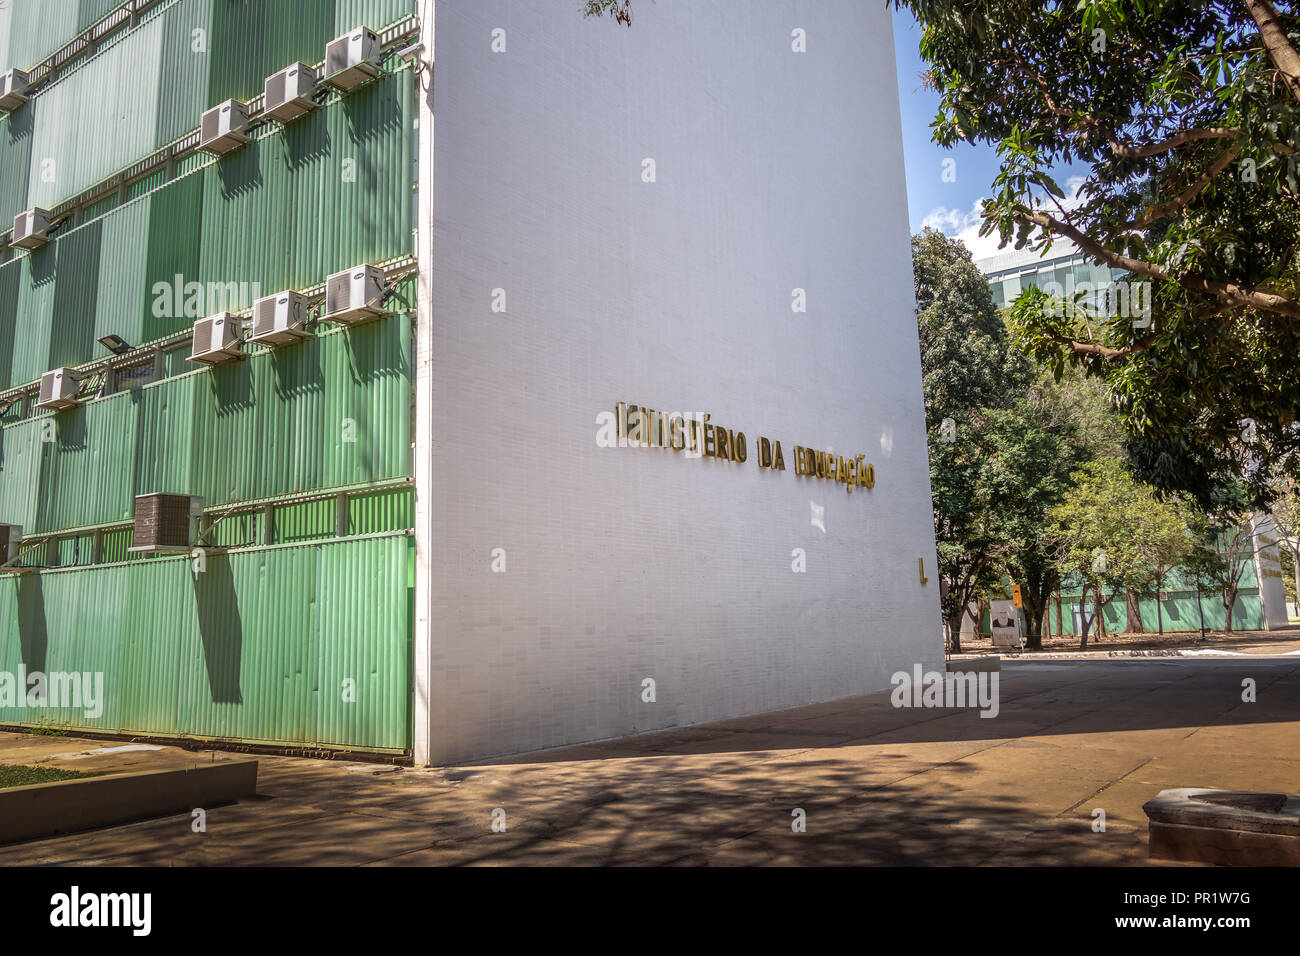 Ministero della Pubblica Istruzione - Brasilia, Distrito Federal, Brasile Foto Stock